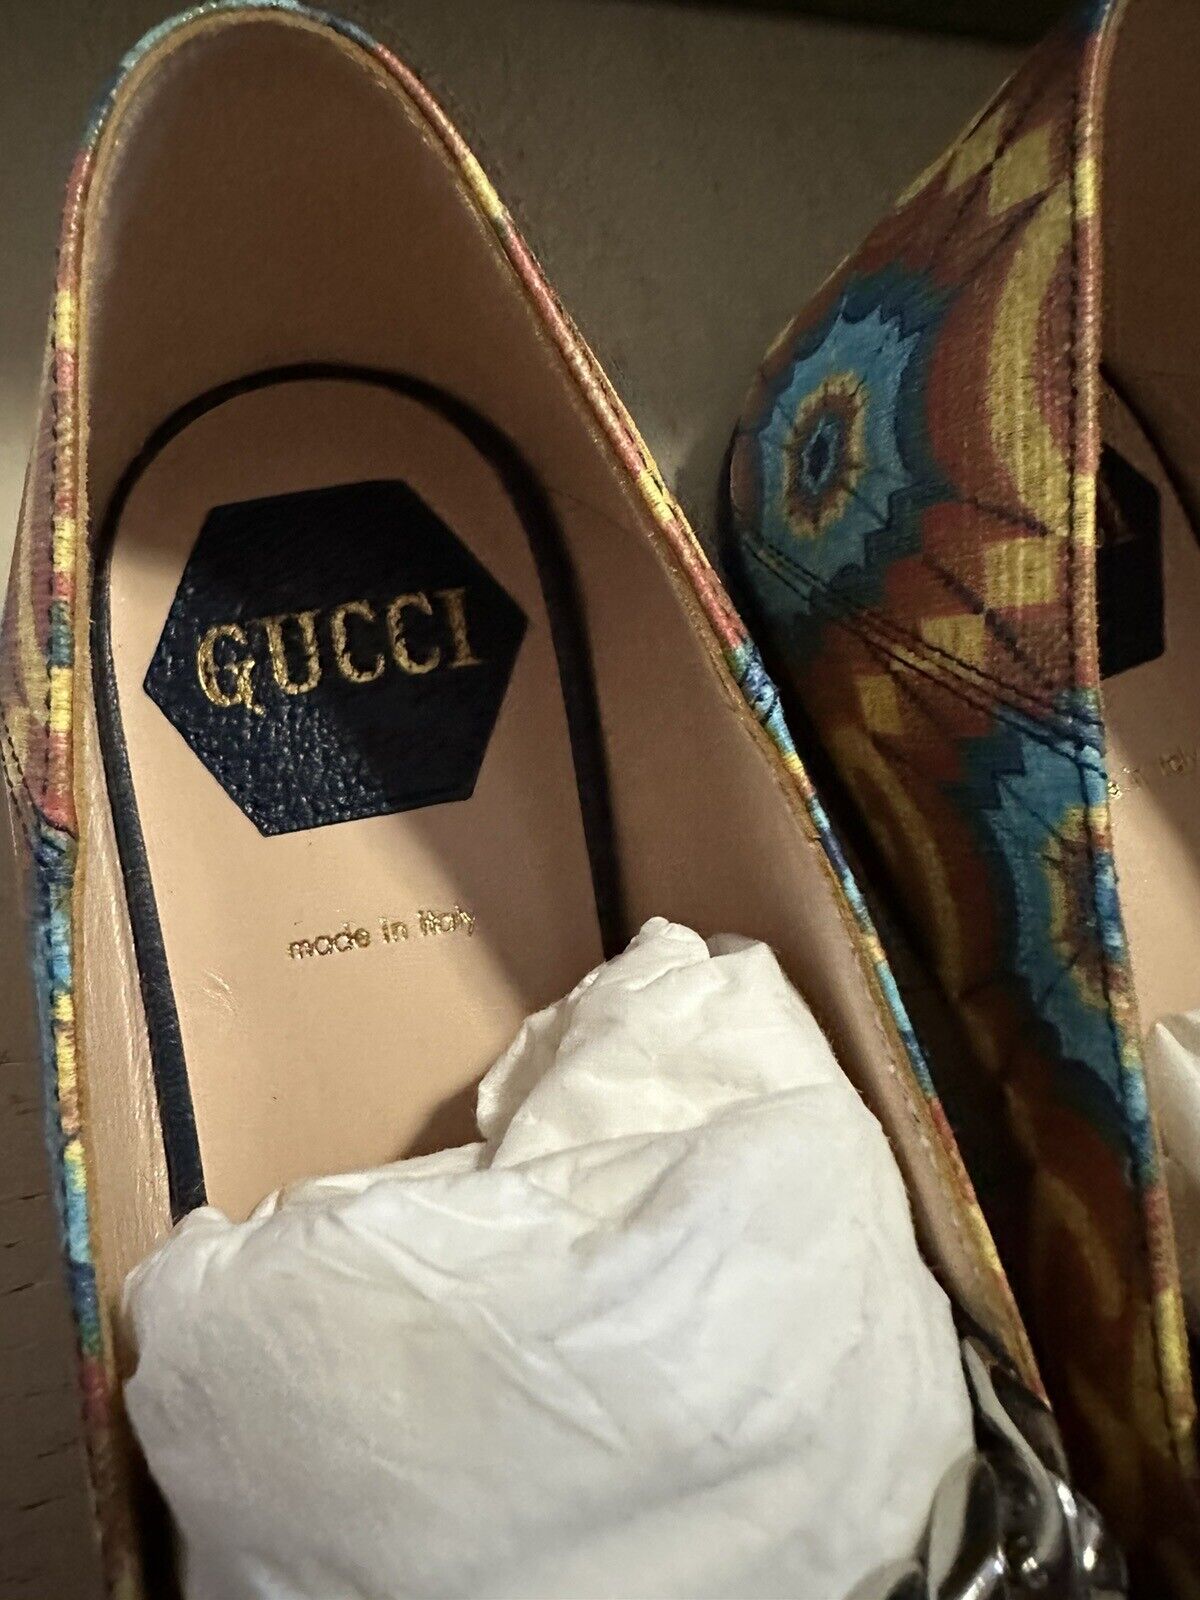 NIB Gucci Женские туфли-лодочки на плоской подошве с логотипом GG Синий/Оранжевый 7 US/37 EU 680953